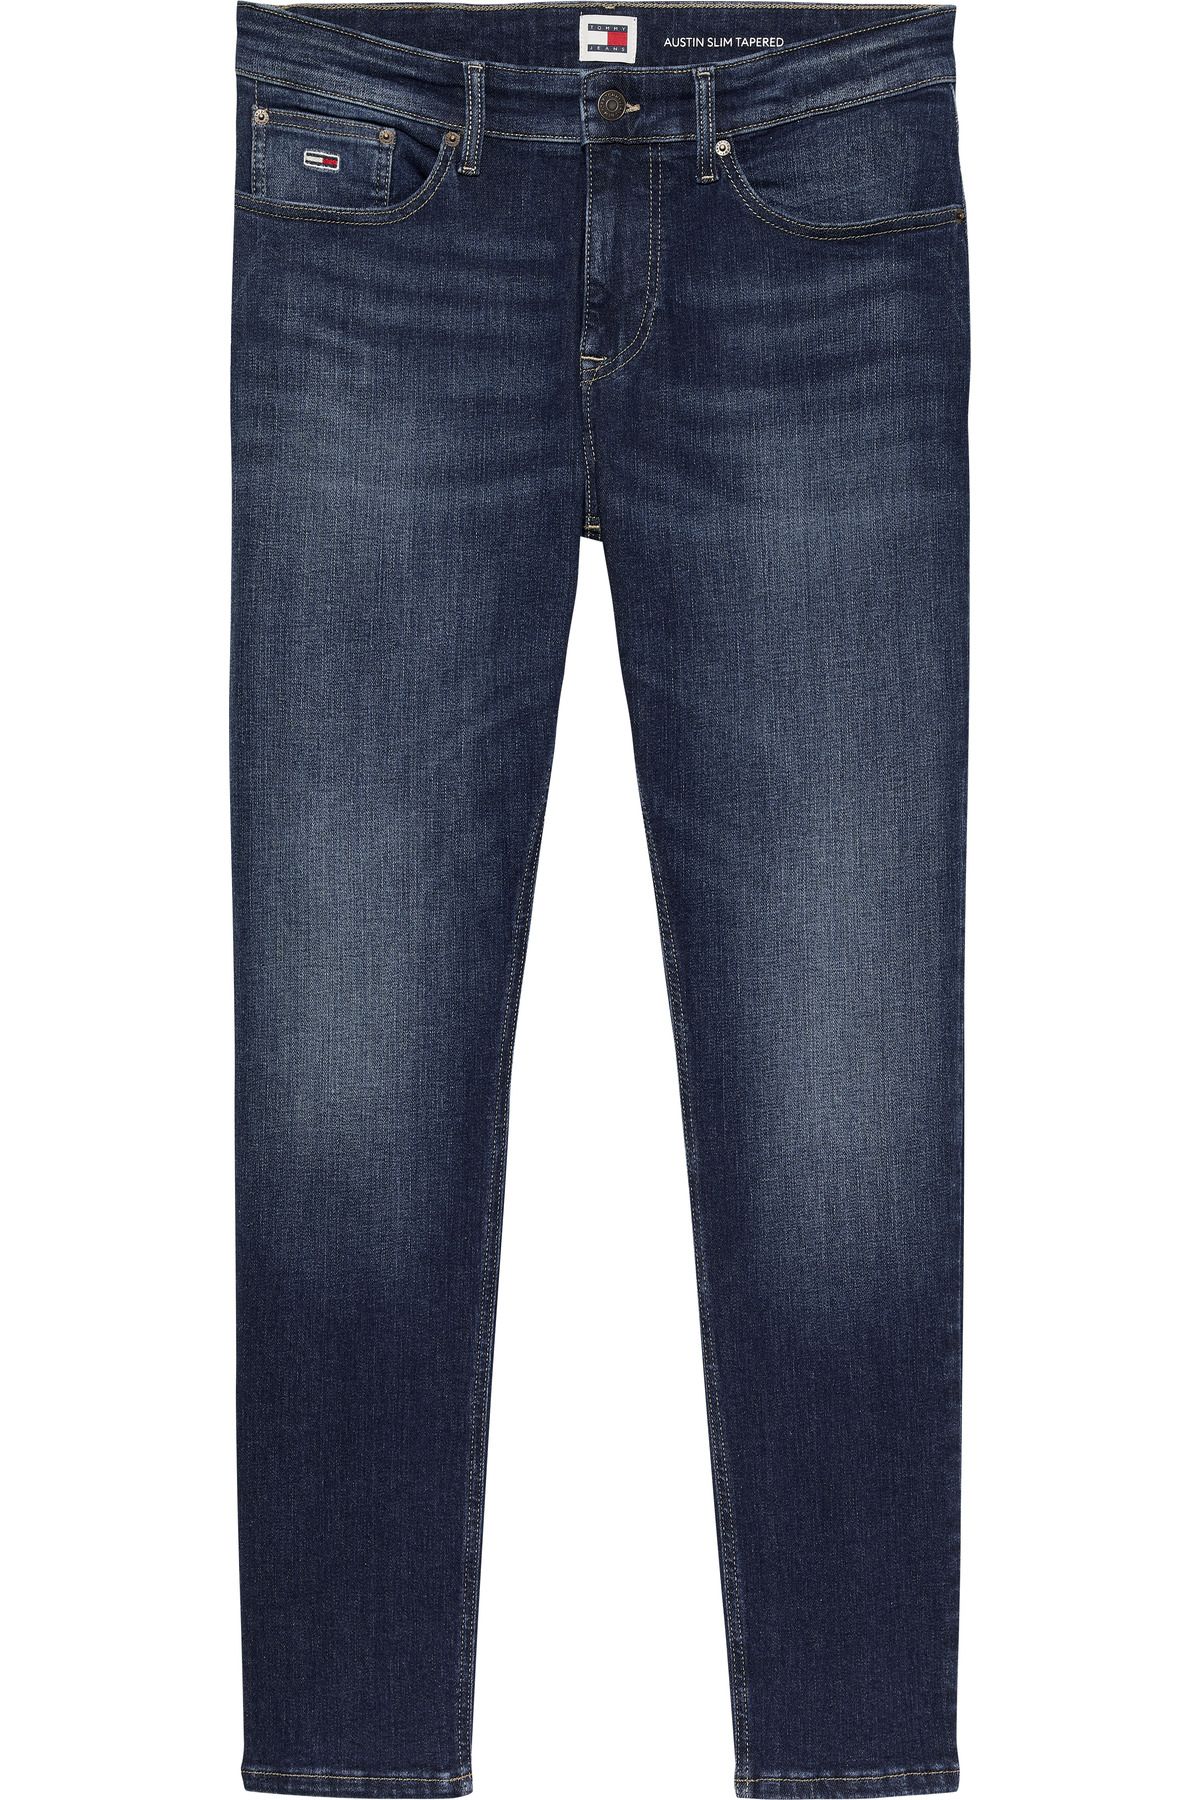 Tommy Hilfiger Erkek Marka Logolu Slim Fit Şık Görünüşlü Klasik 5 Cepli  Günlük Kullanıma Uygun Mavi Denim Jeans DM